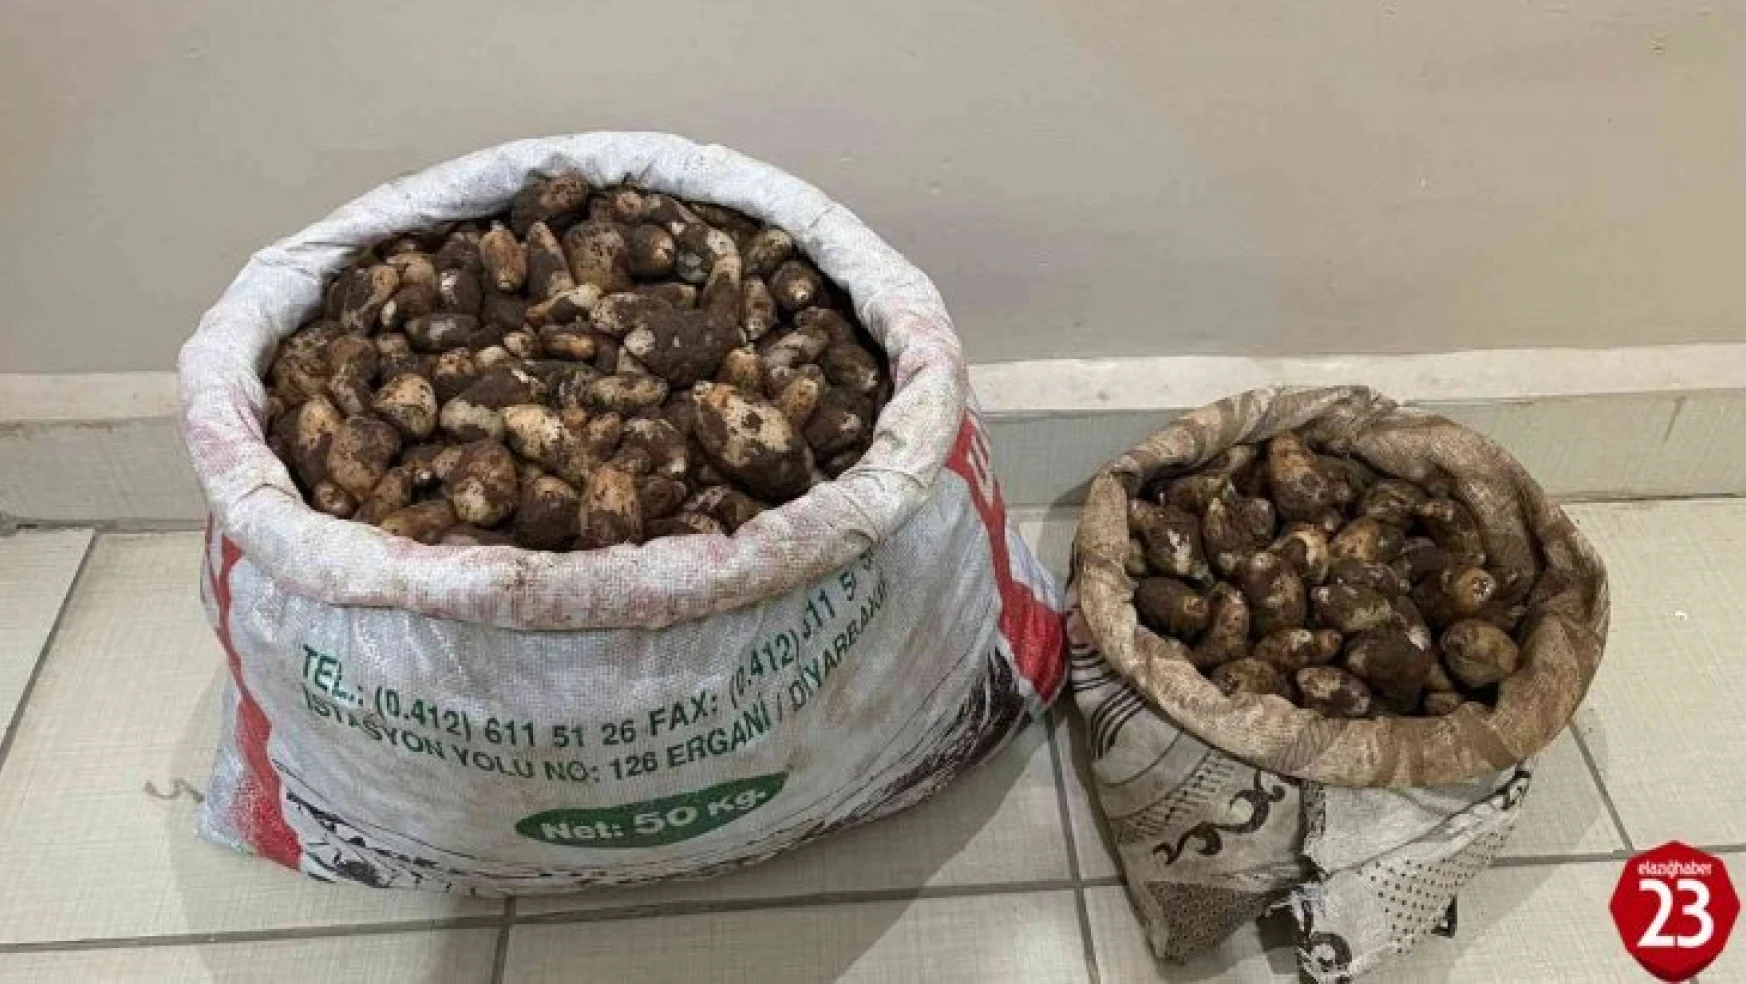 Arıcak'ta Salep Soğanı Toplayan 4 Kişiye 436 Bin Lira Para Cezası